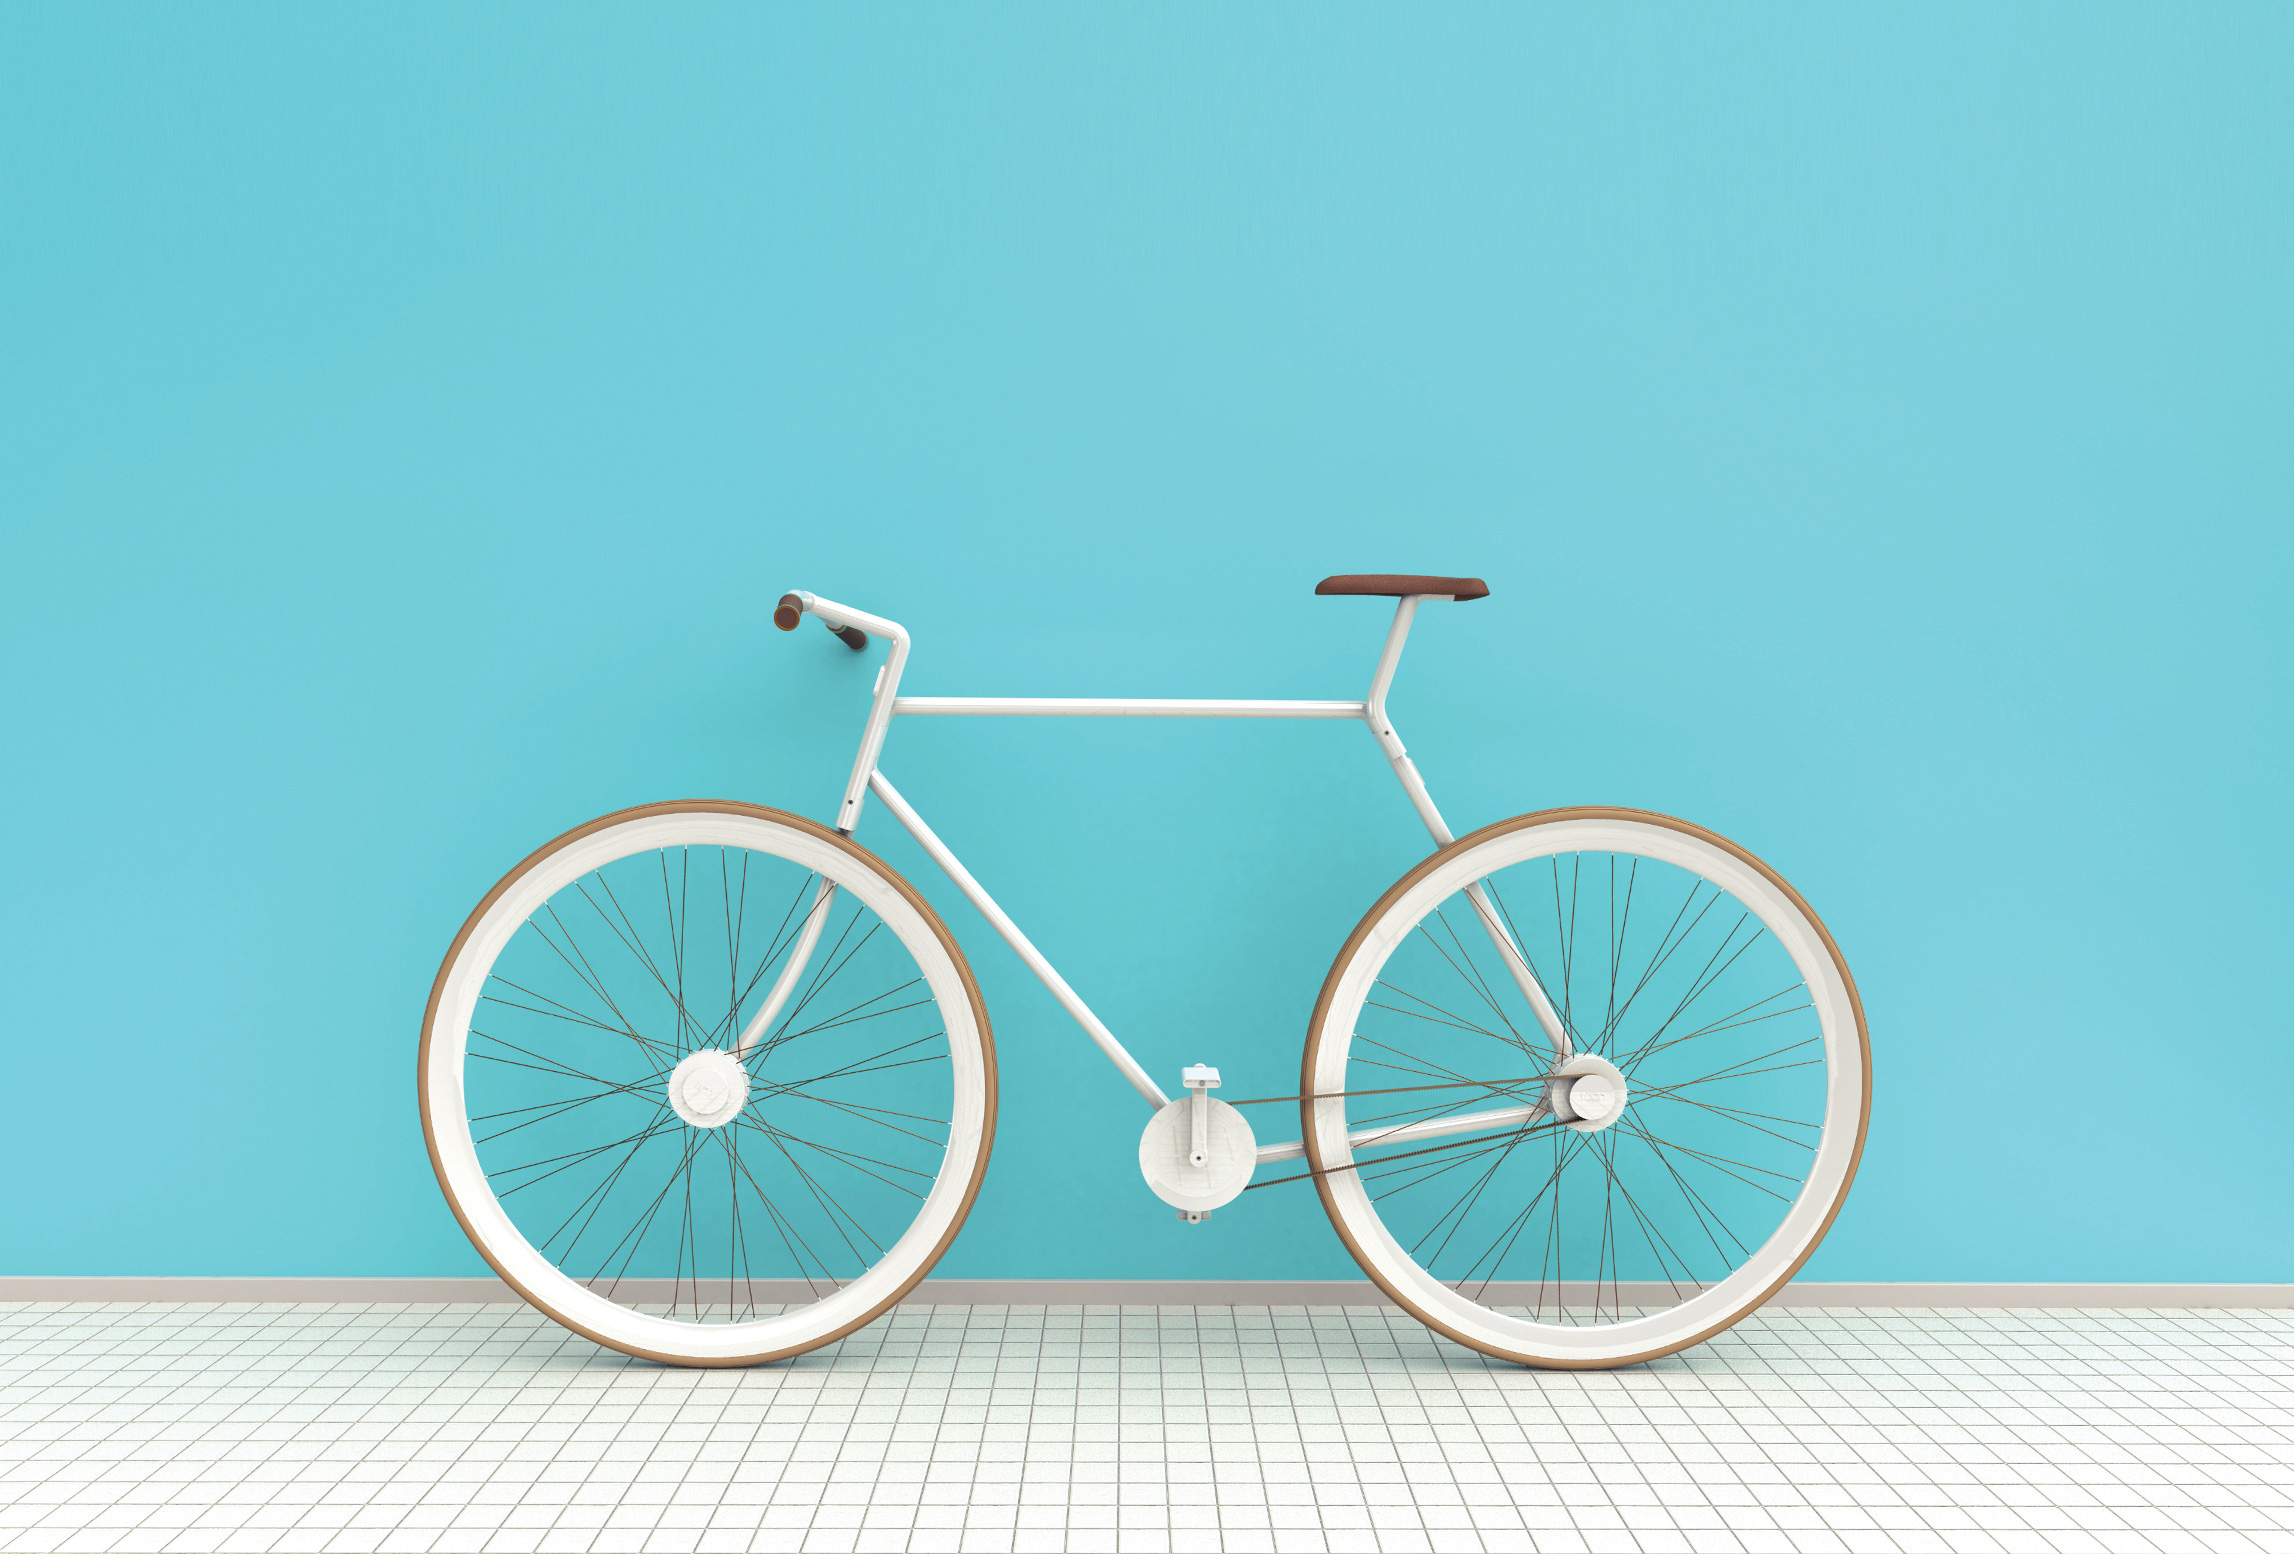 kit-bike-lucid-design-01